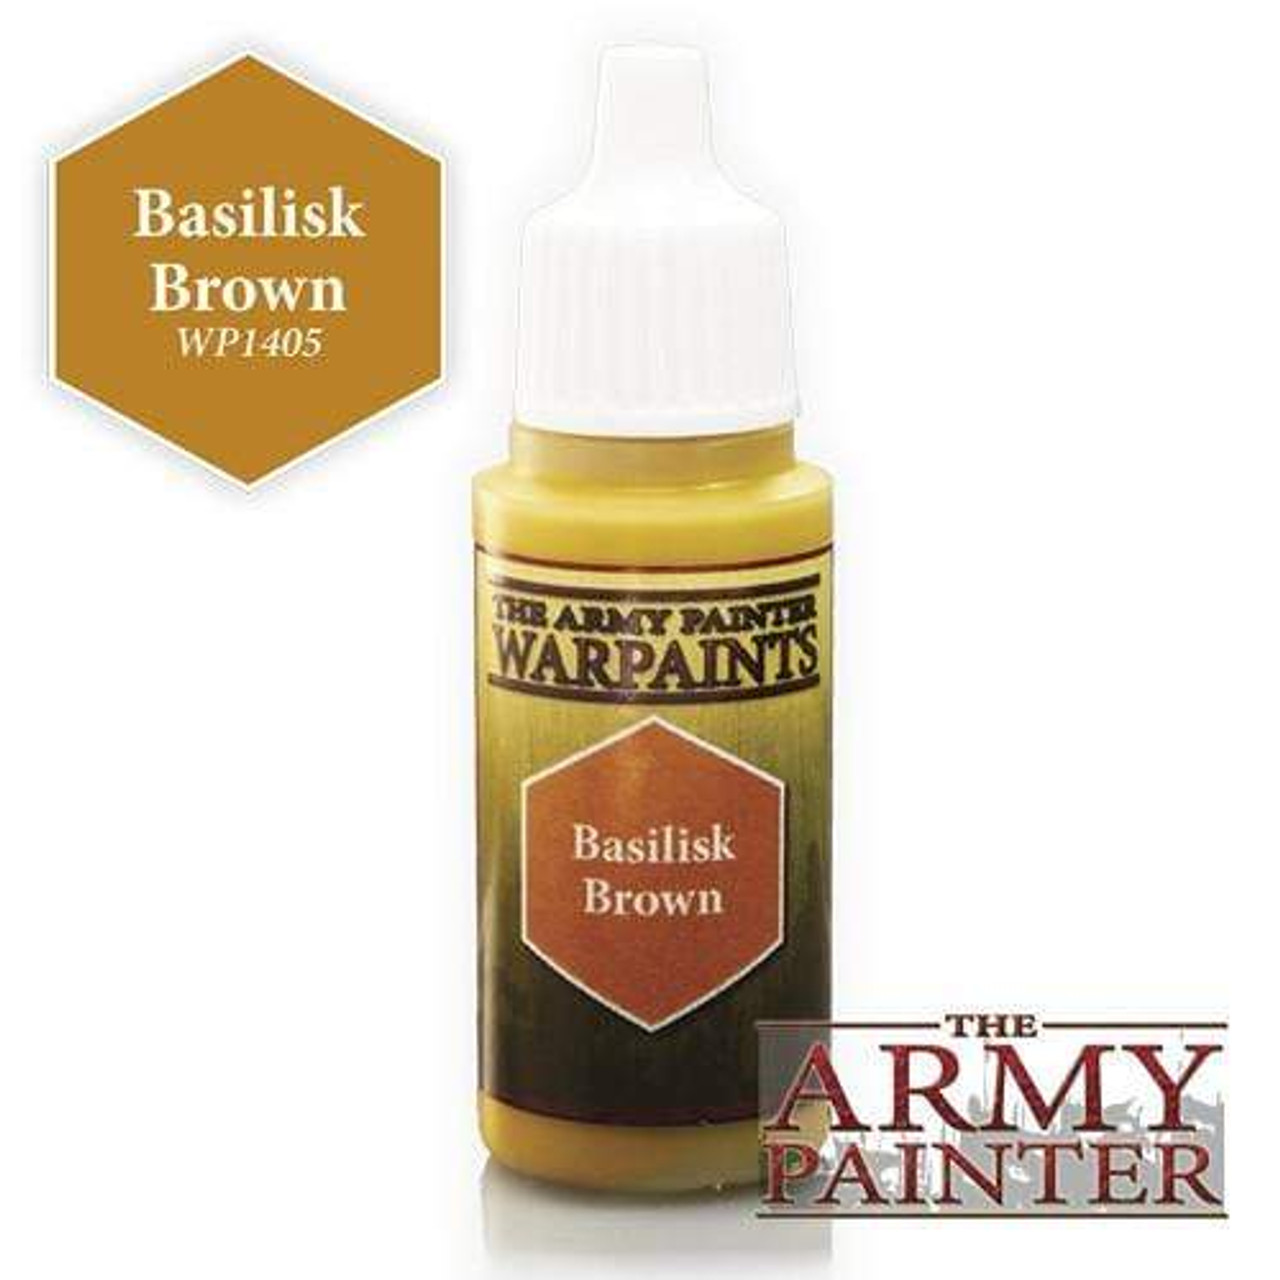 Army Painter Warpaint: Basilisk Brown